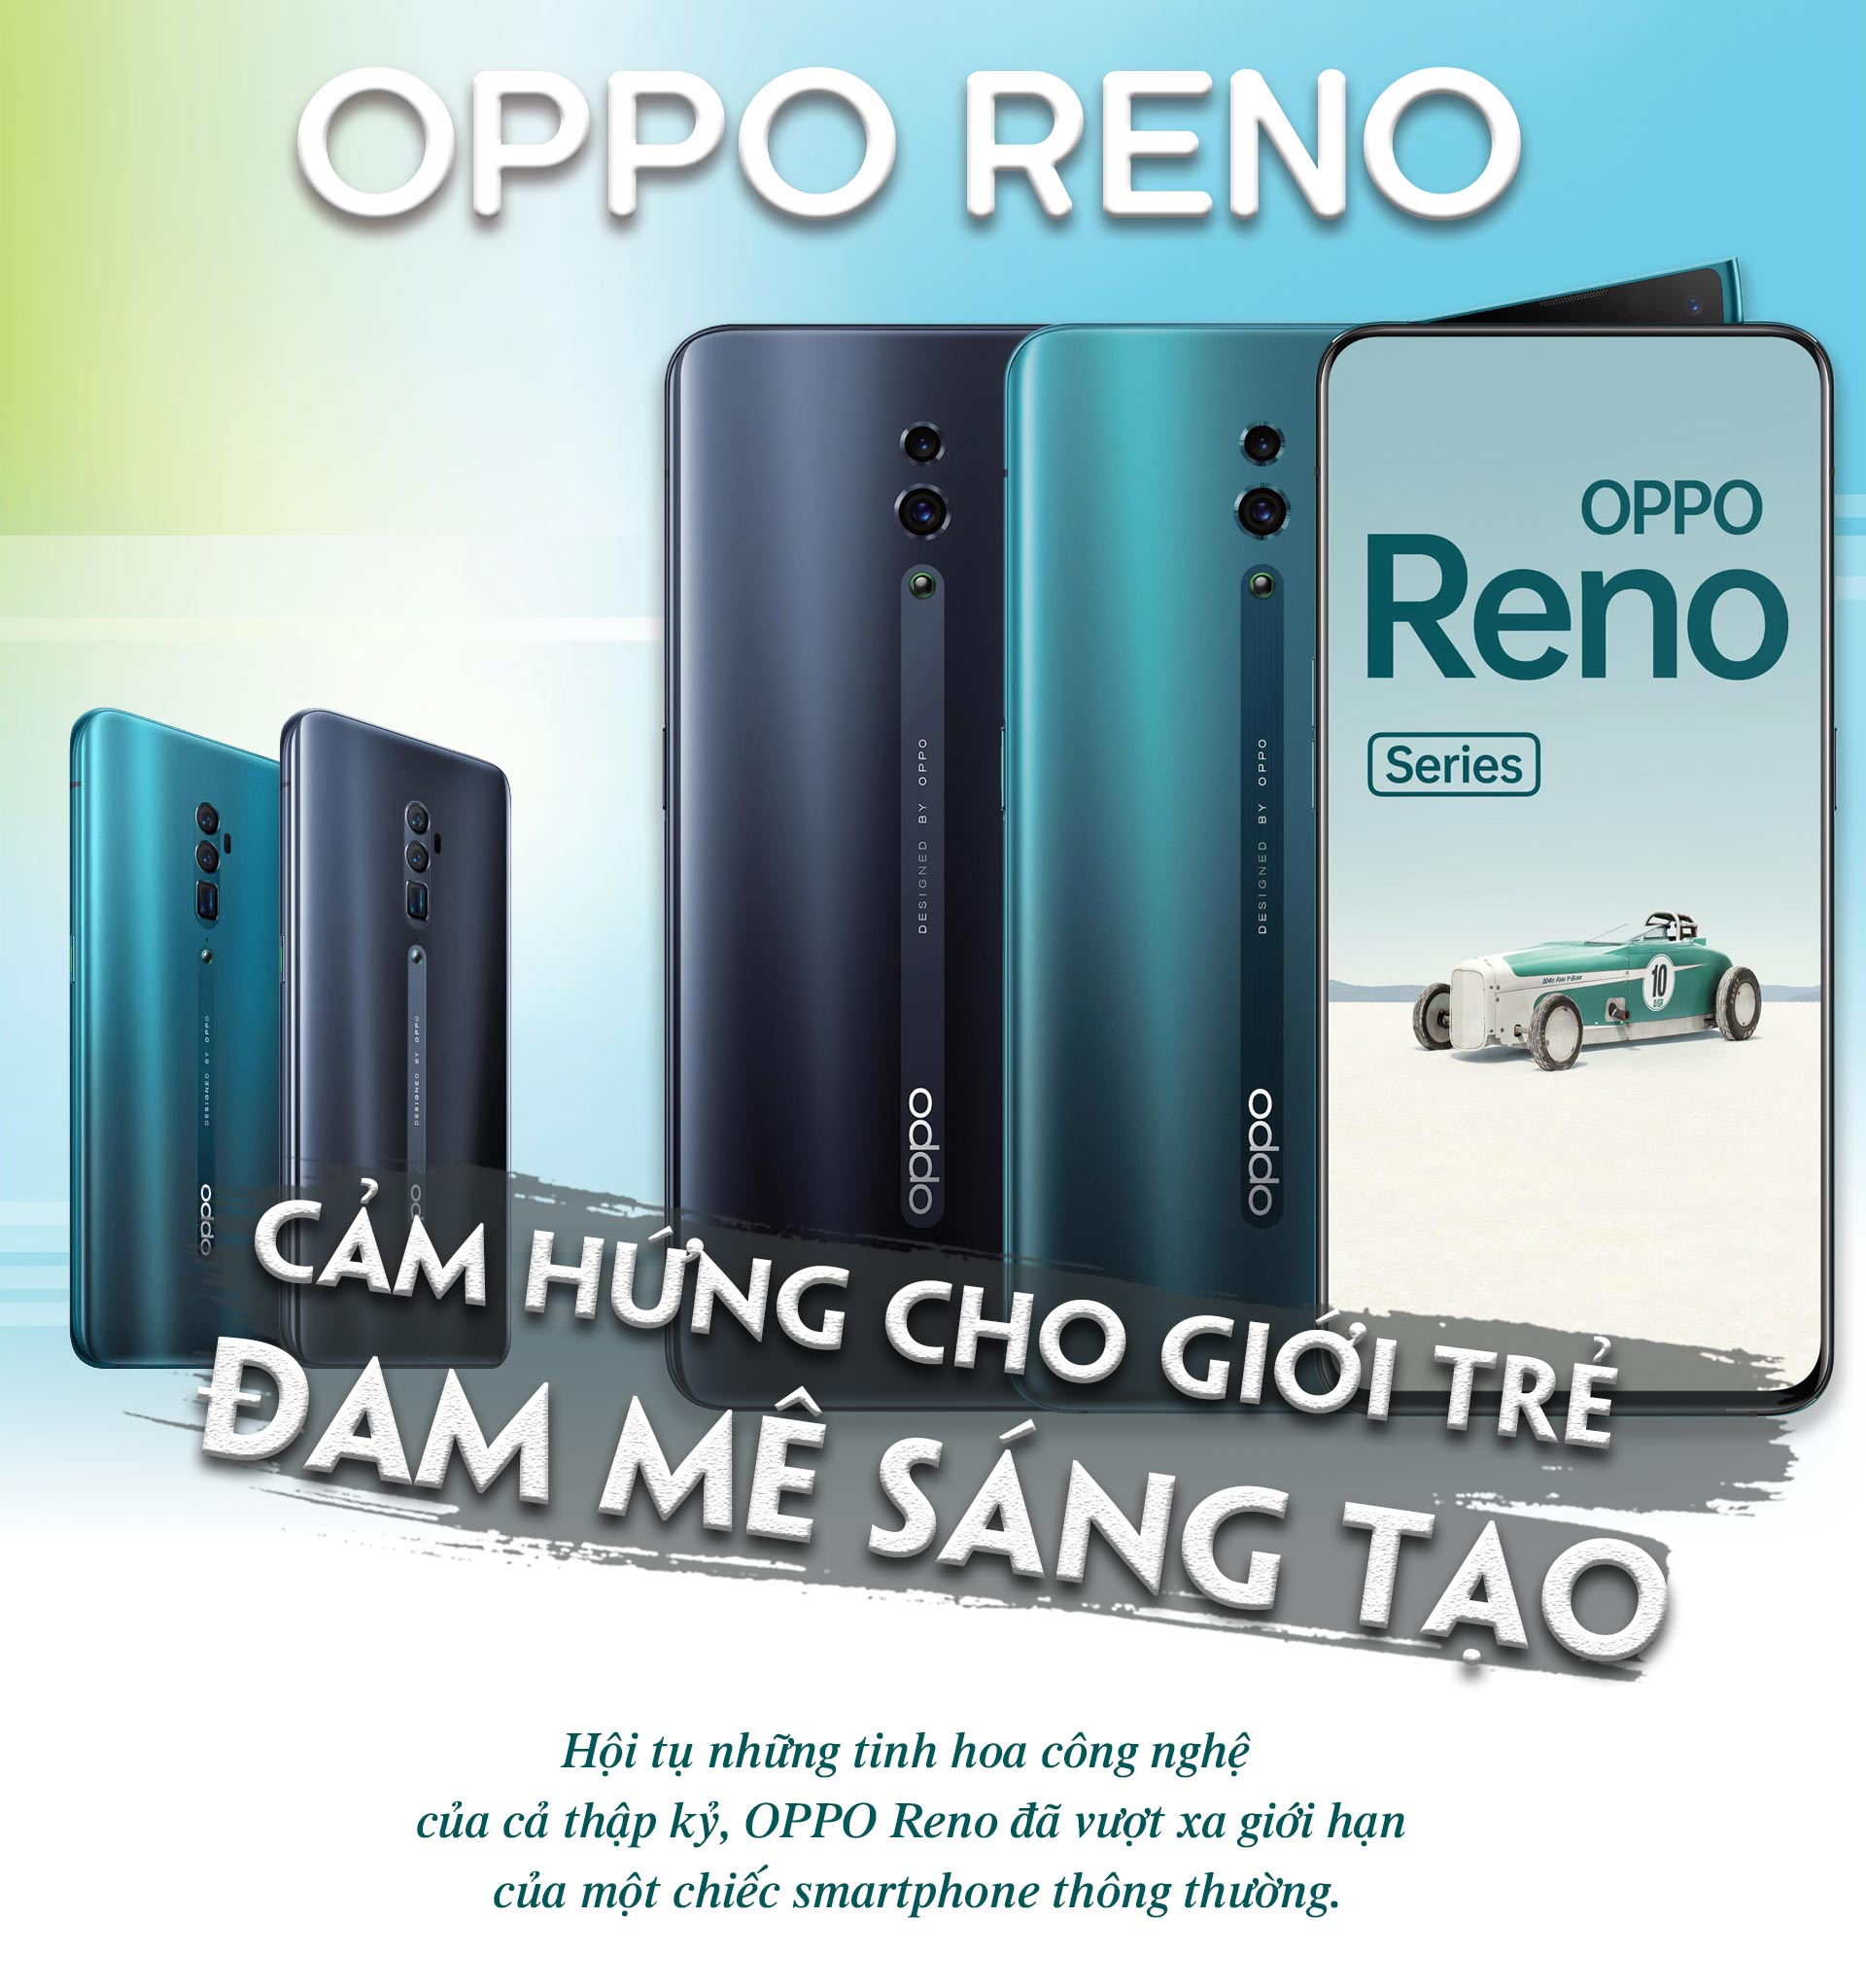 OPPO Reno: Smartphone sinh ra để truyền cảm hứng cho giới trẻ đam mê sáng tạo - 1